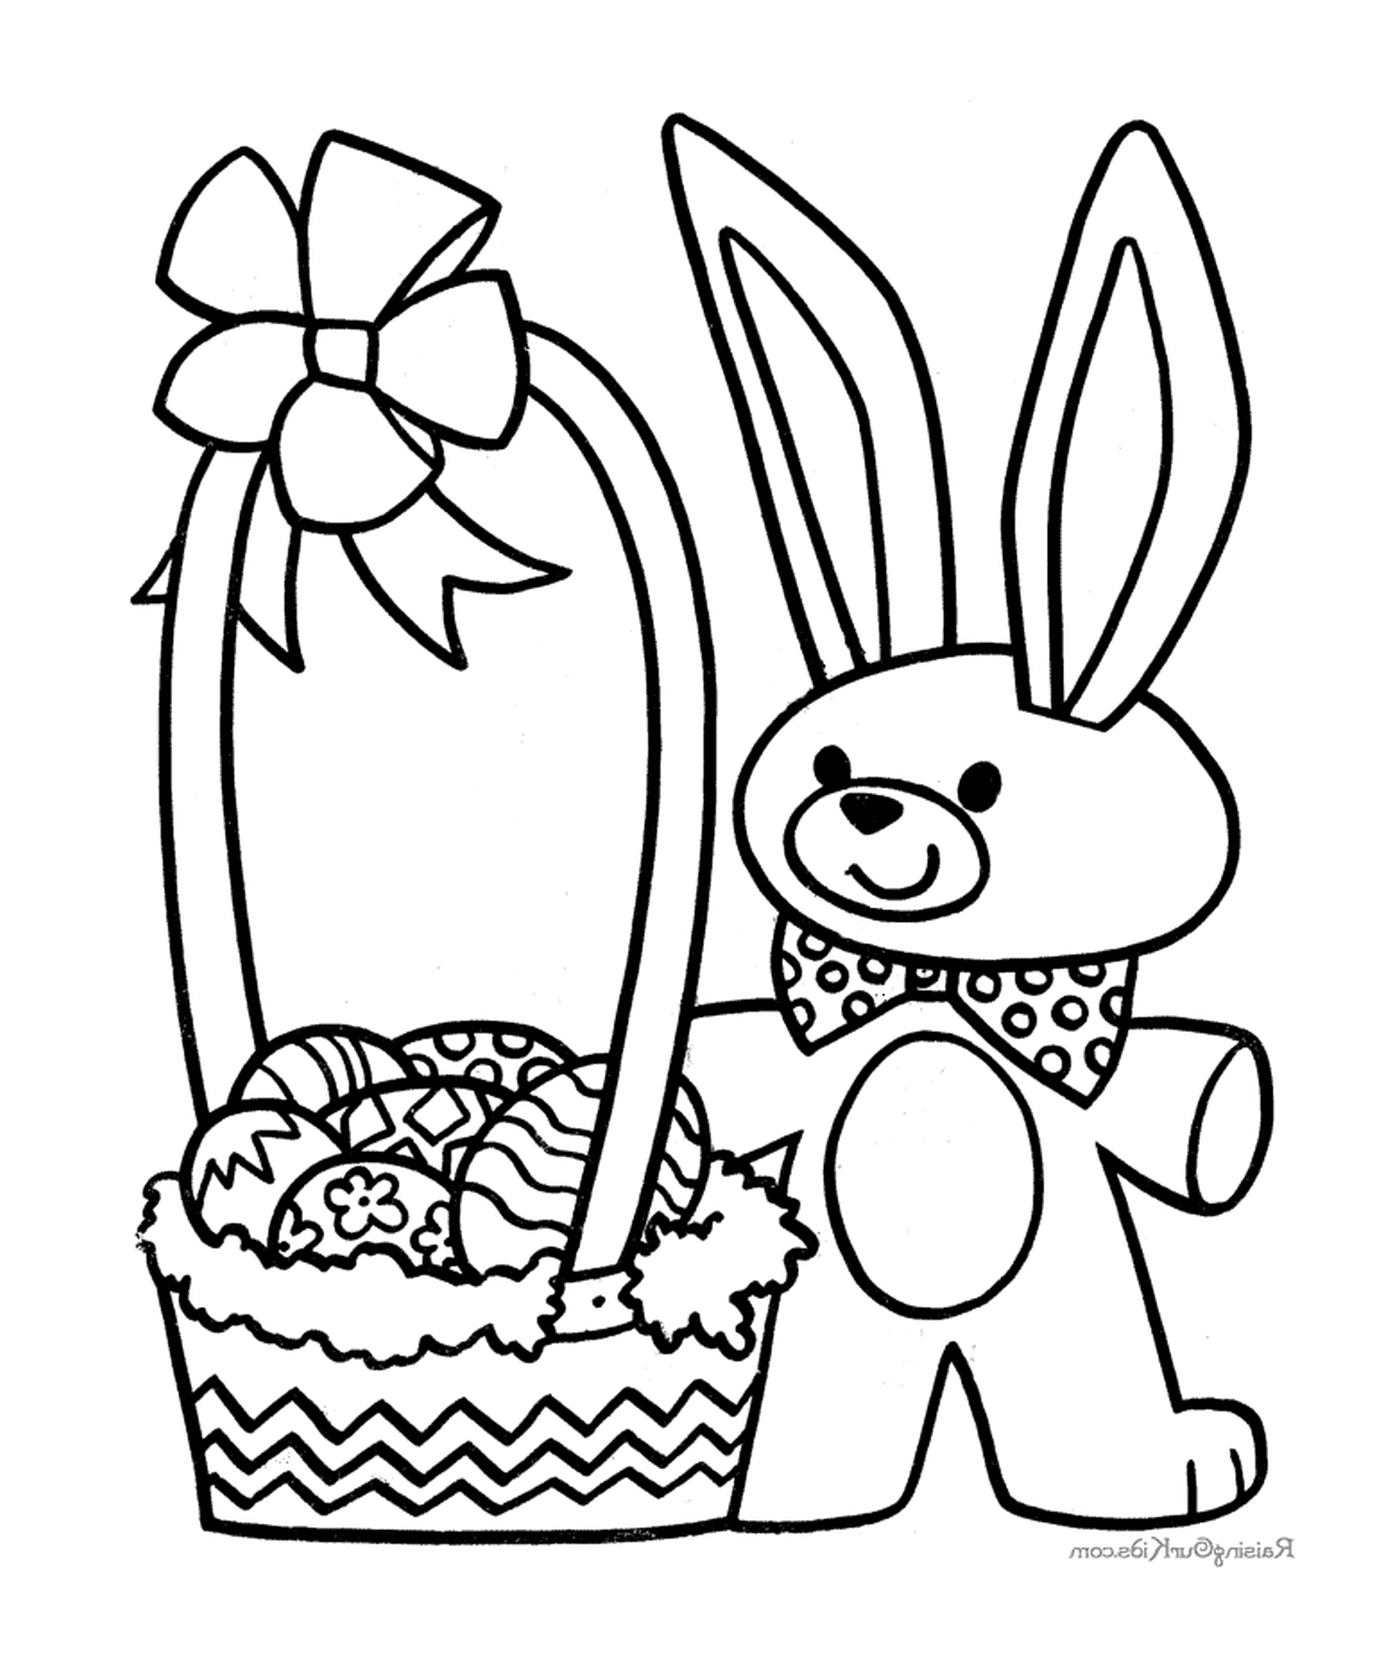  एक ईस्टर खरगोश जो अंडे की टोकरी के साथ है 